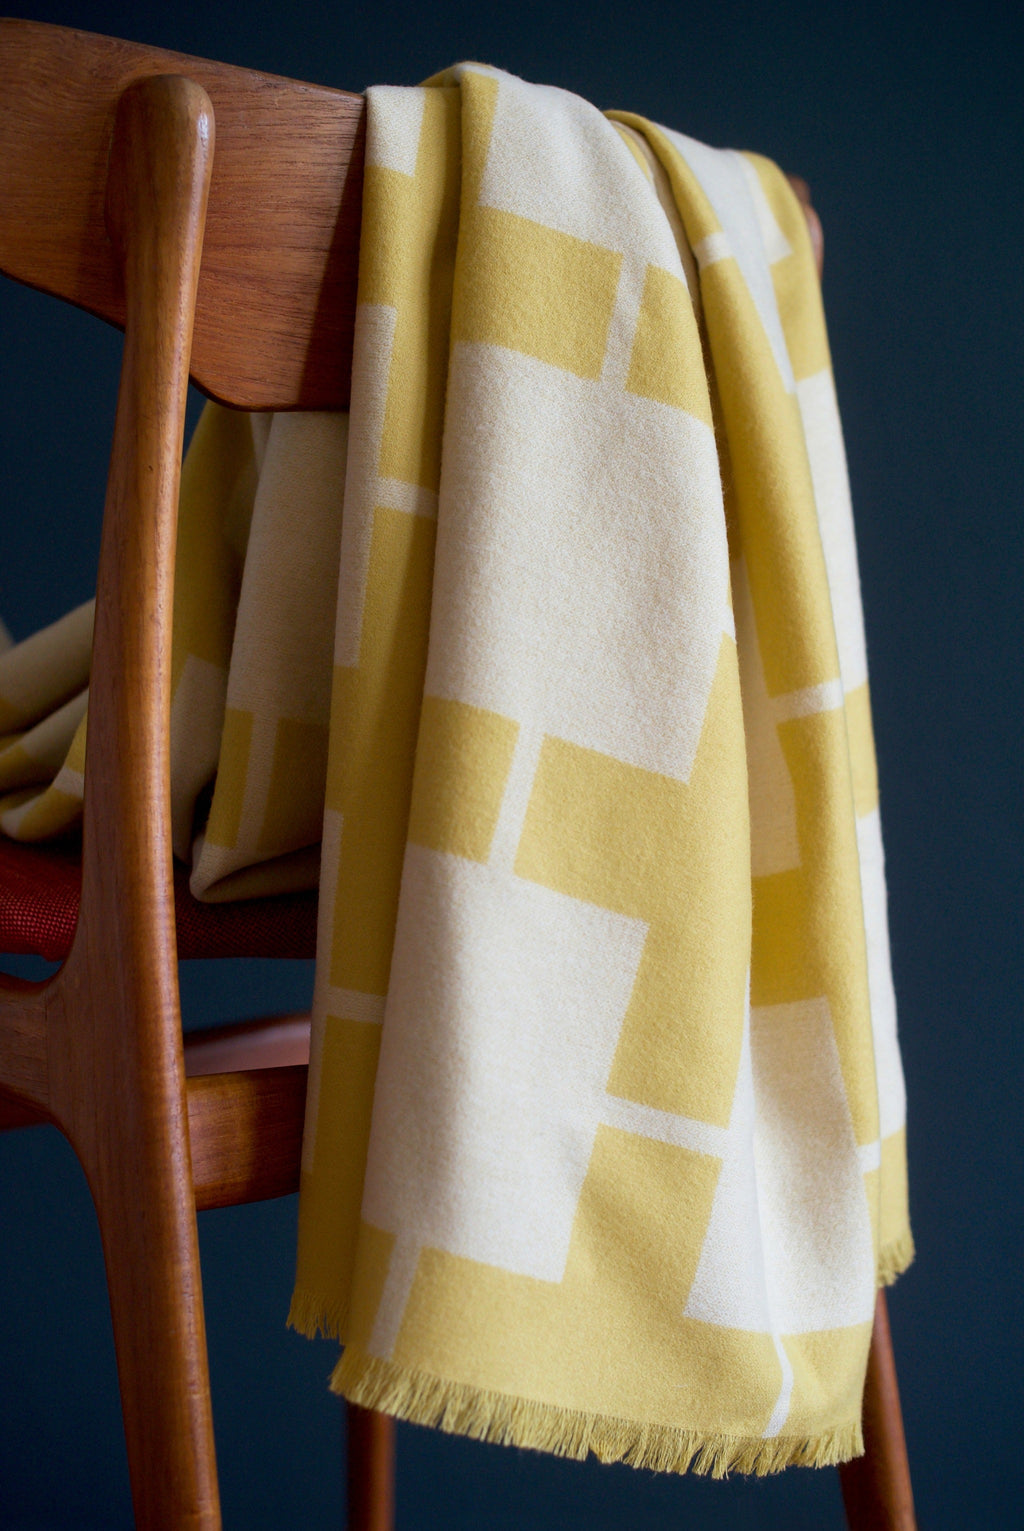 Wolldecke und exquisites Plaid Mende Merino in – beige Design Extra doubleface gelb gewebt aus Catharina Fine